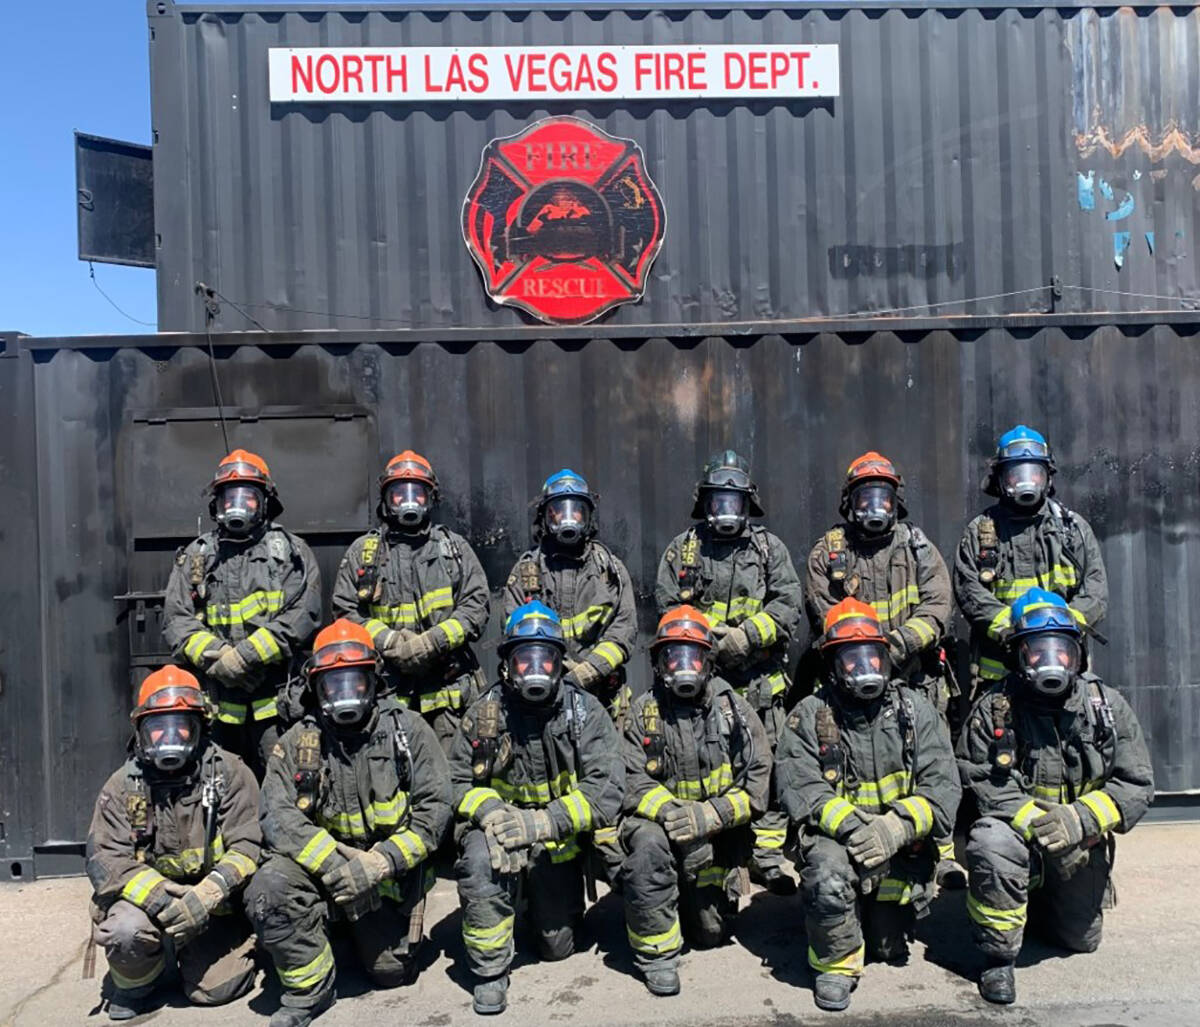 12 nuevos bomberos se graduaron de la academia, ampliando el Departamento de Bomberos de North ...